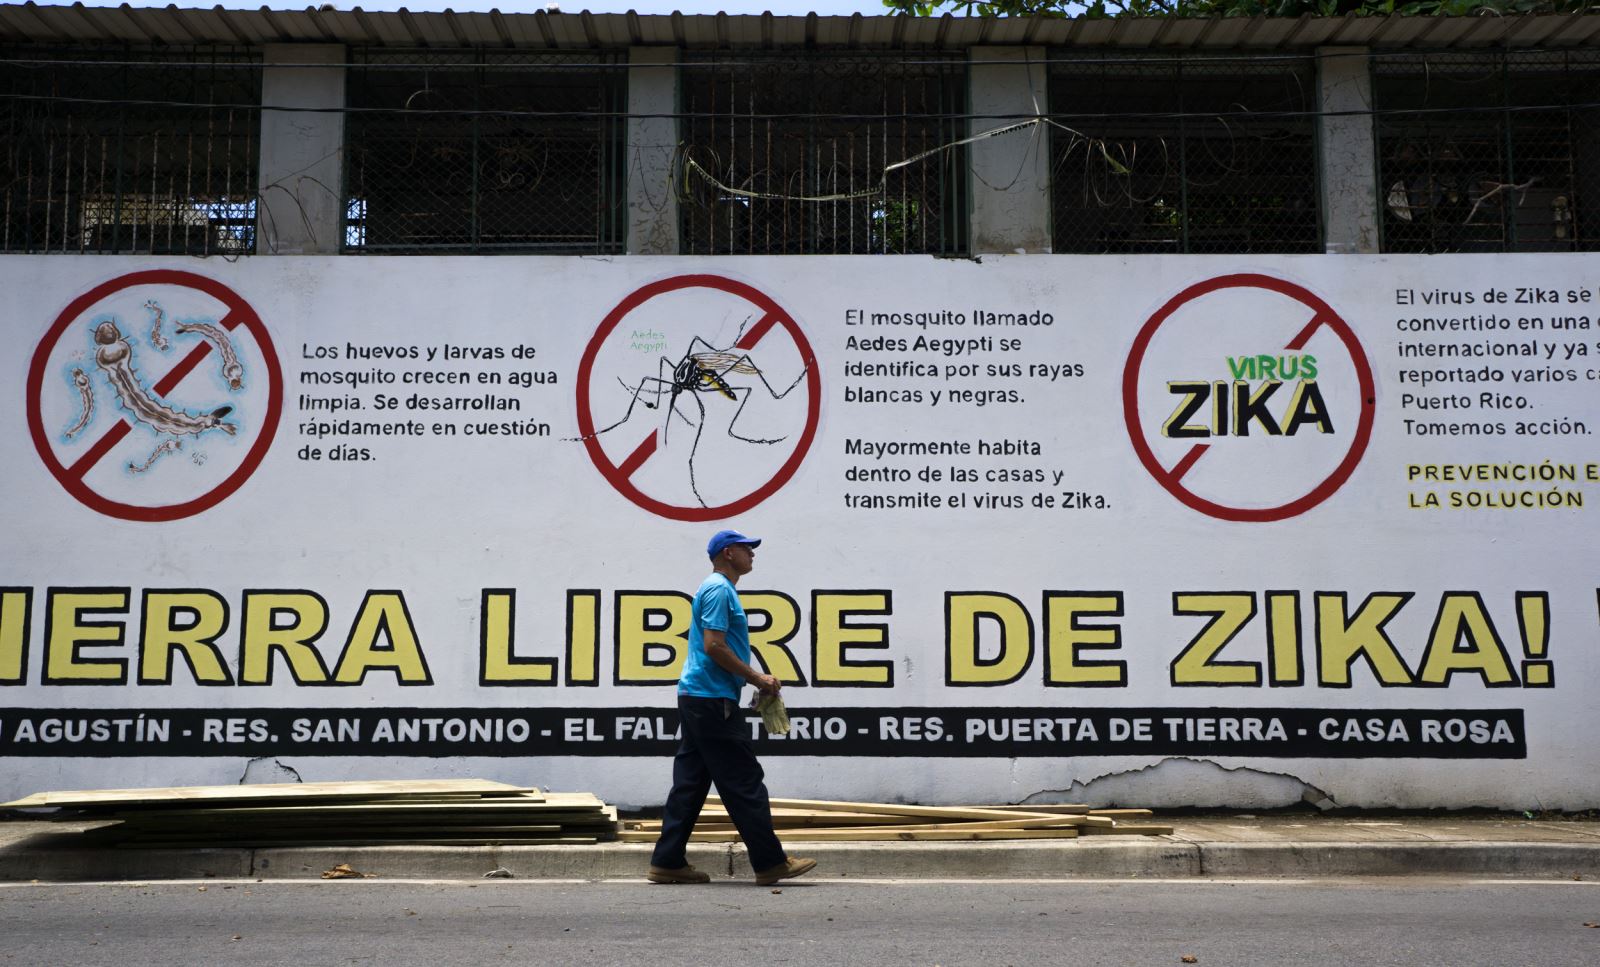 Zika tự kiệt sức khi không còn ai để lây nhiễm. Ảnh: Getty Images